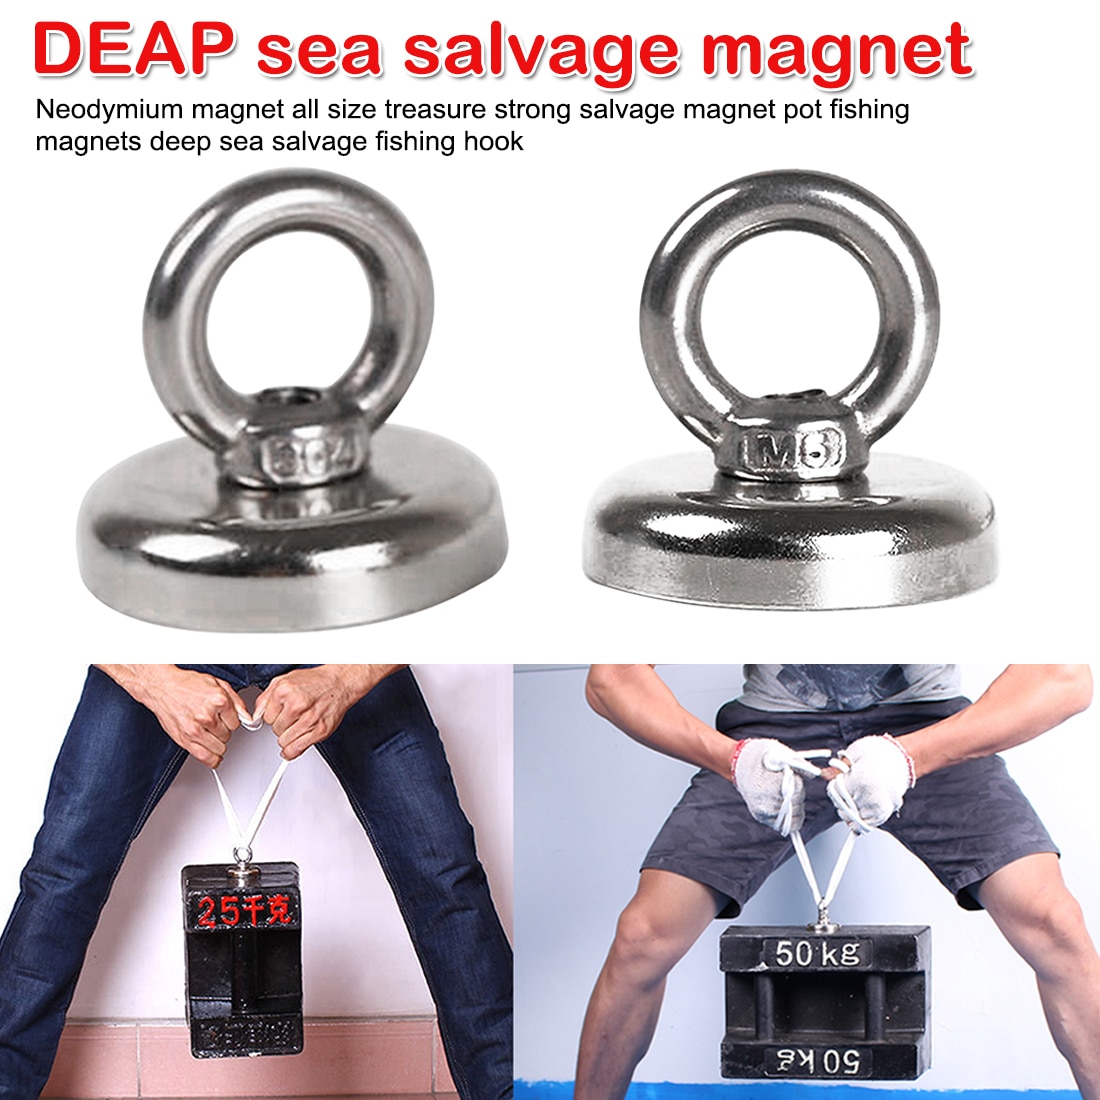 Krachtige Gat Salvage Magneten Pot Magneten Permanente Diepzee Salvage Vissen Haak Sterke Neodymium Magneet Zoeken Magneten Haak